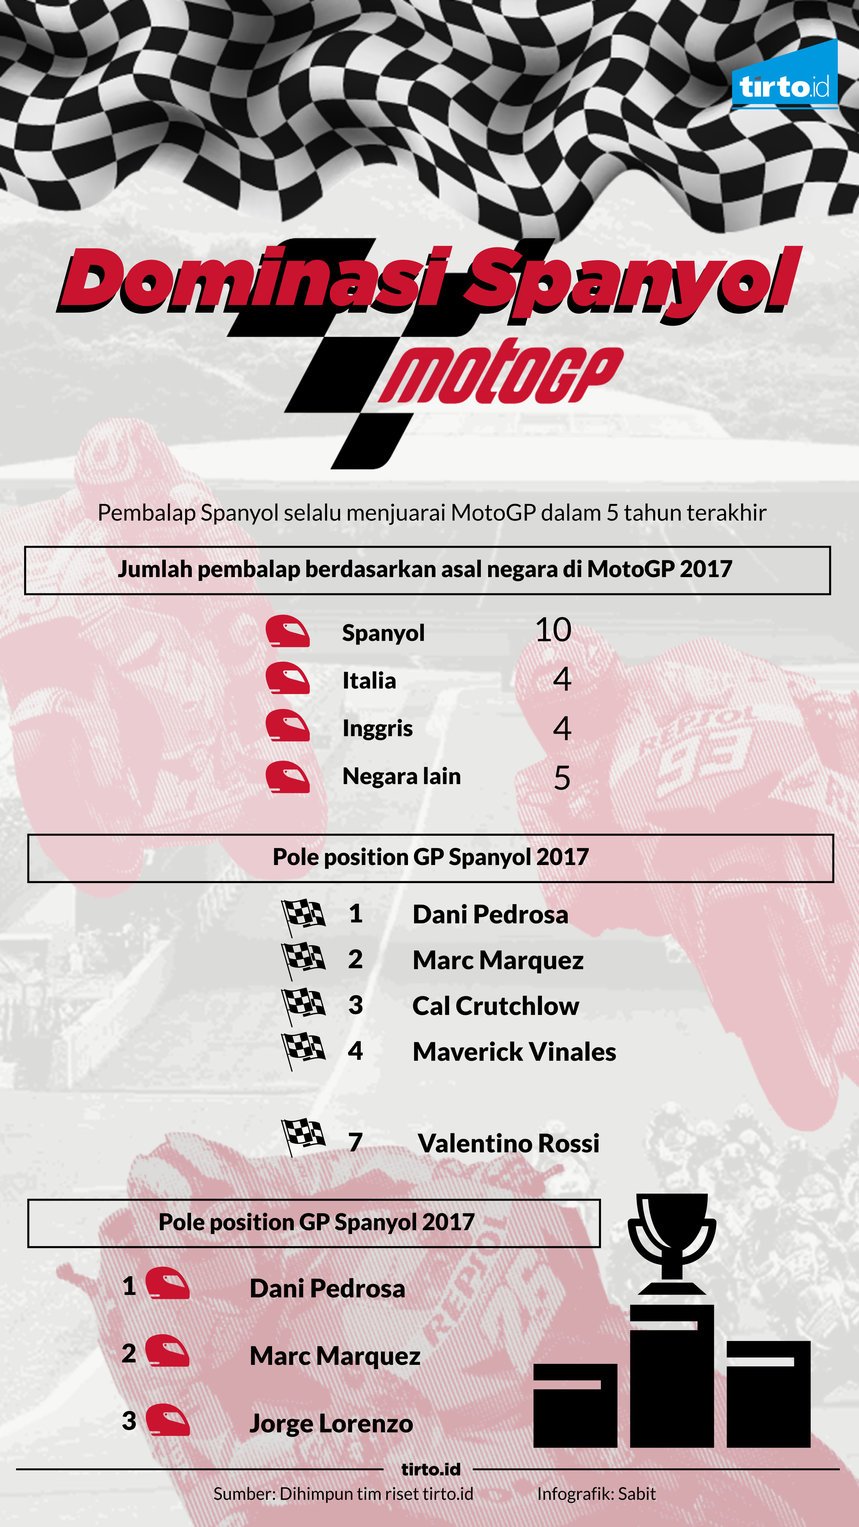 Infografik Dominasi Spanyol motoGP